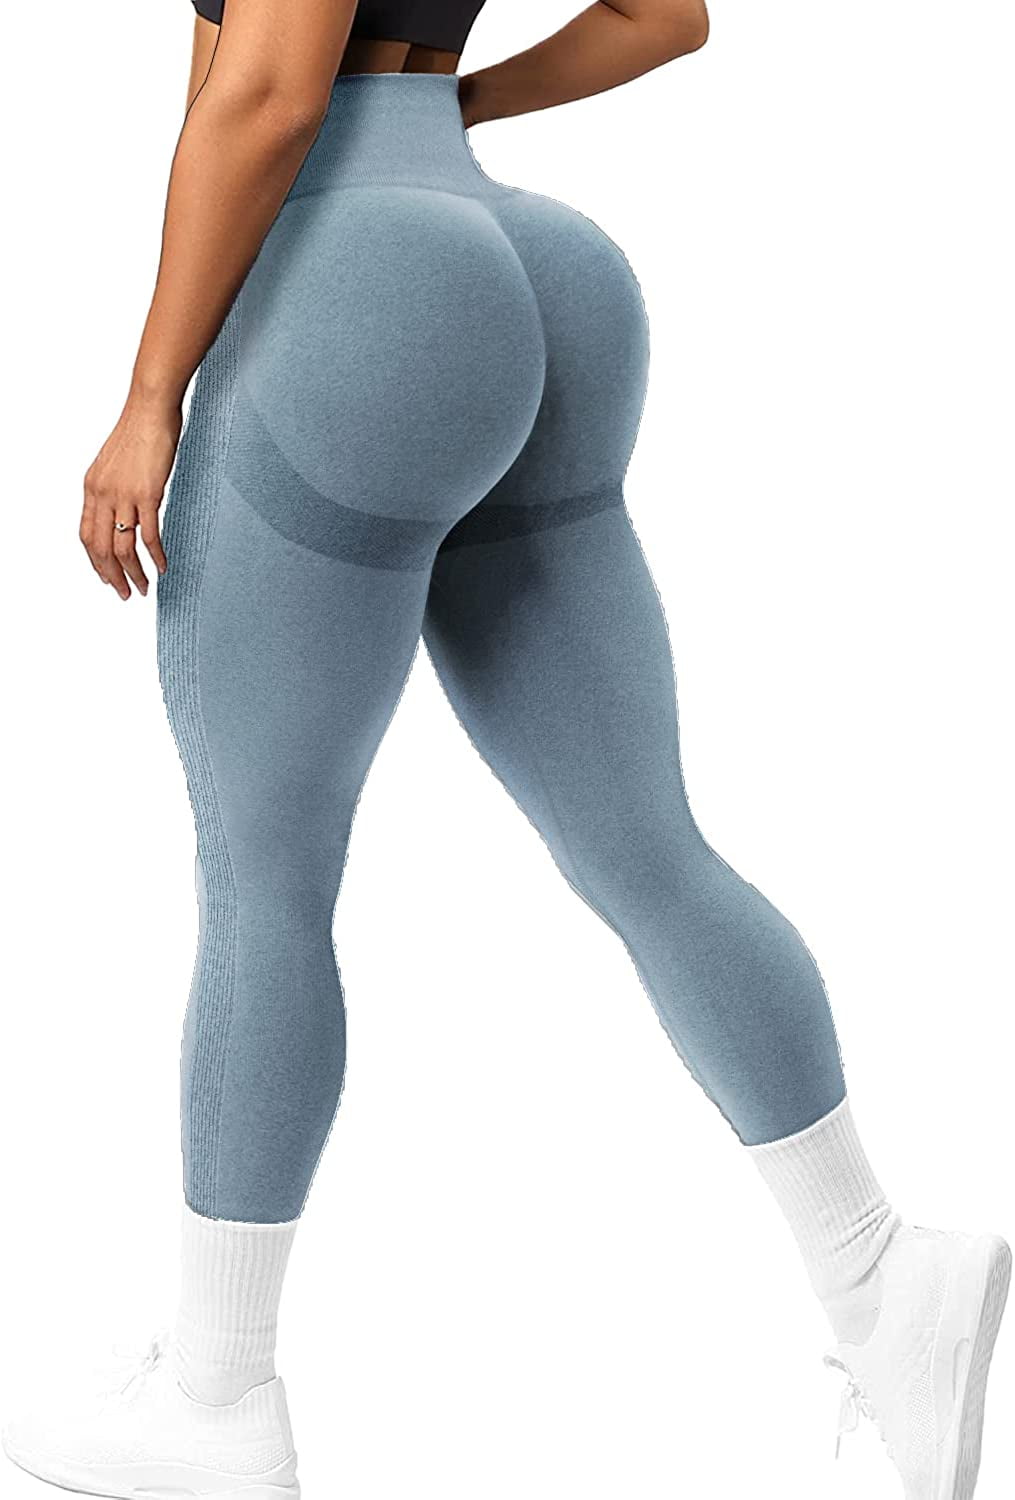 VASLANDA Butt Lifting Workout Leggings for Women, Scrunch Butt Gym